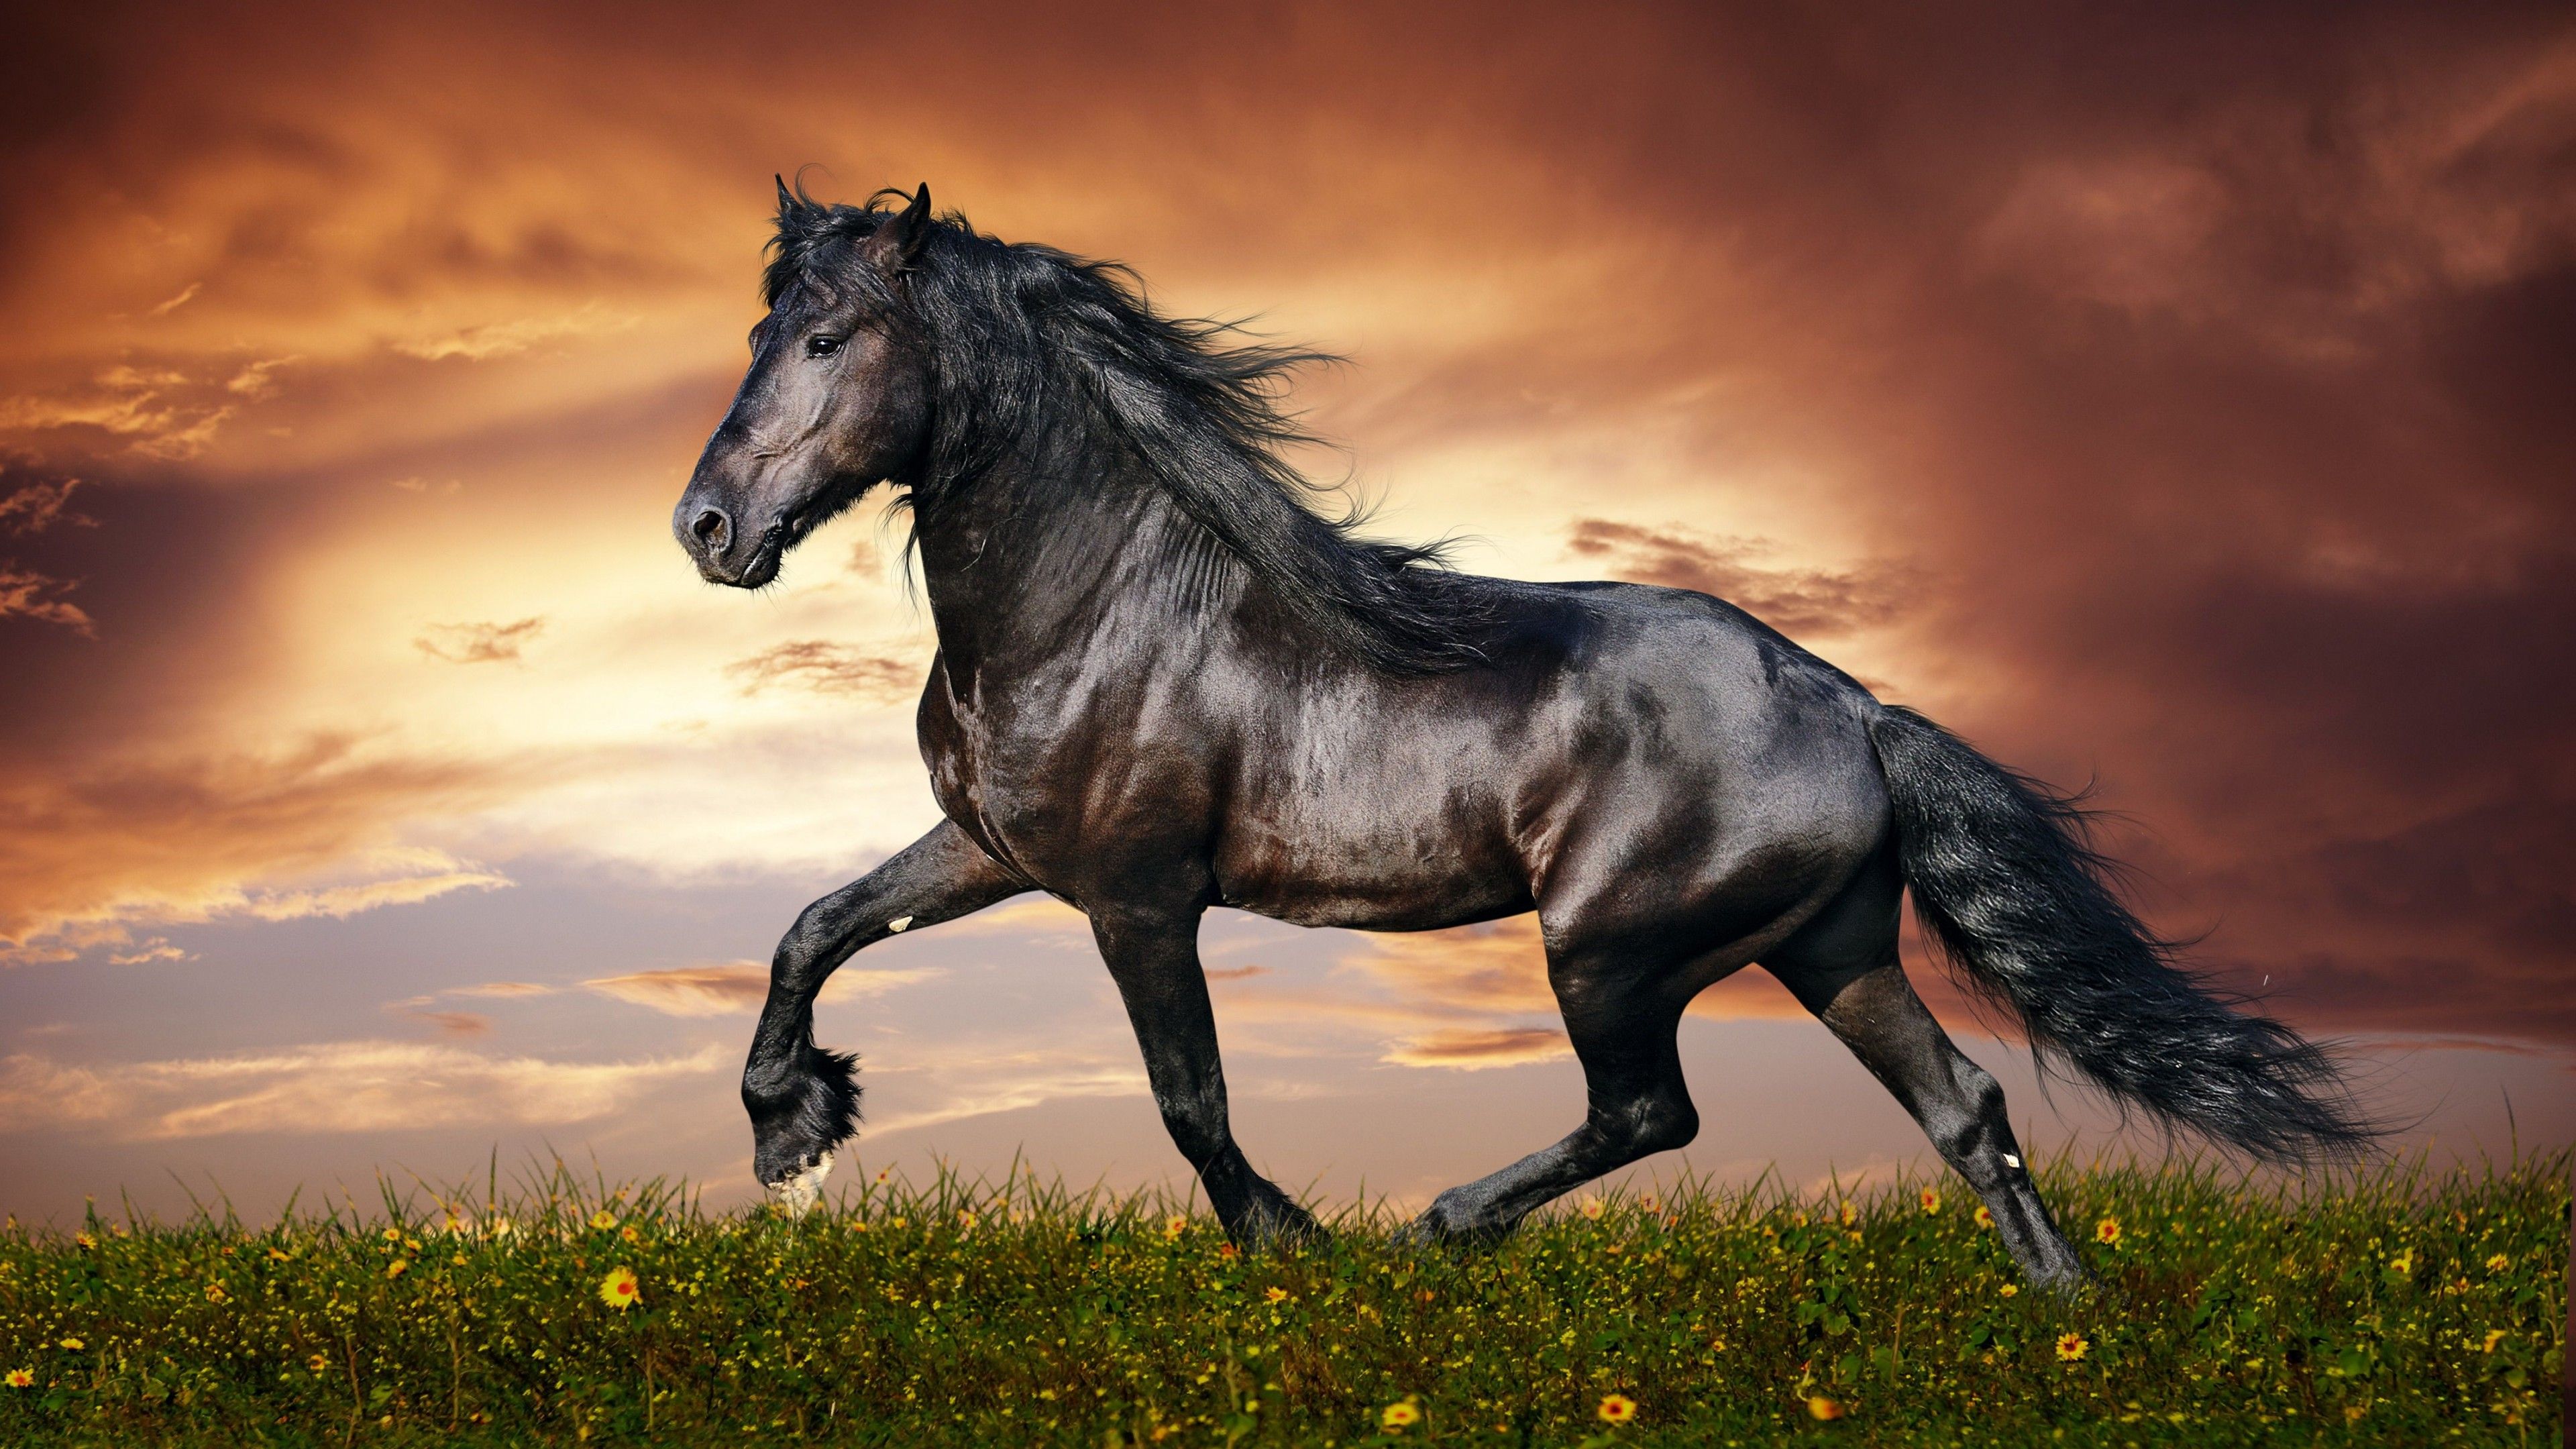 Wallpaper horse, 5k, 4k wallpaper, hooves, mane, galloping